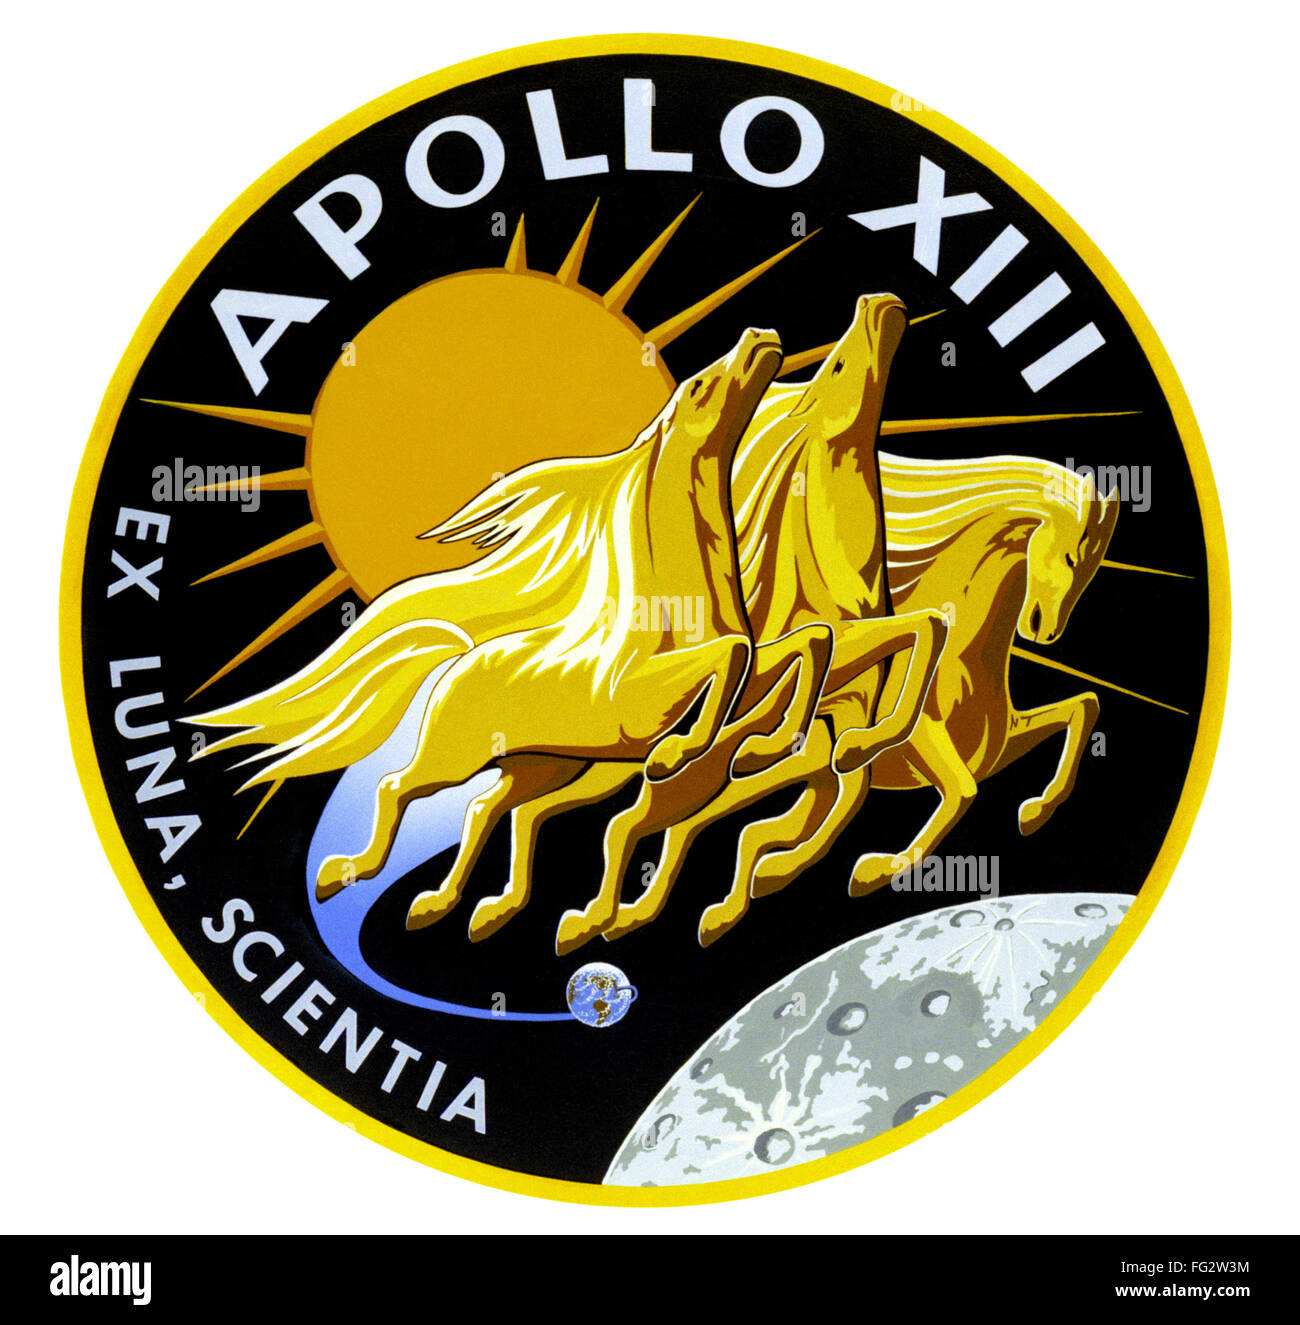 APOLLO 13: INSIGNIA, 1970. /nOfficial insignia of the Apollo 13 mission, 1970. Stock Photo